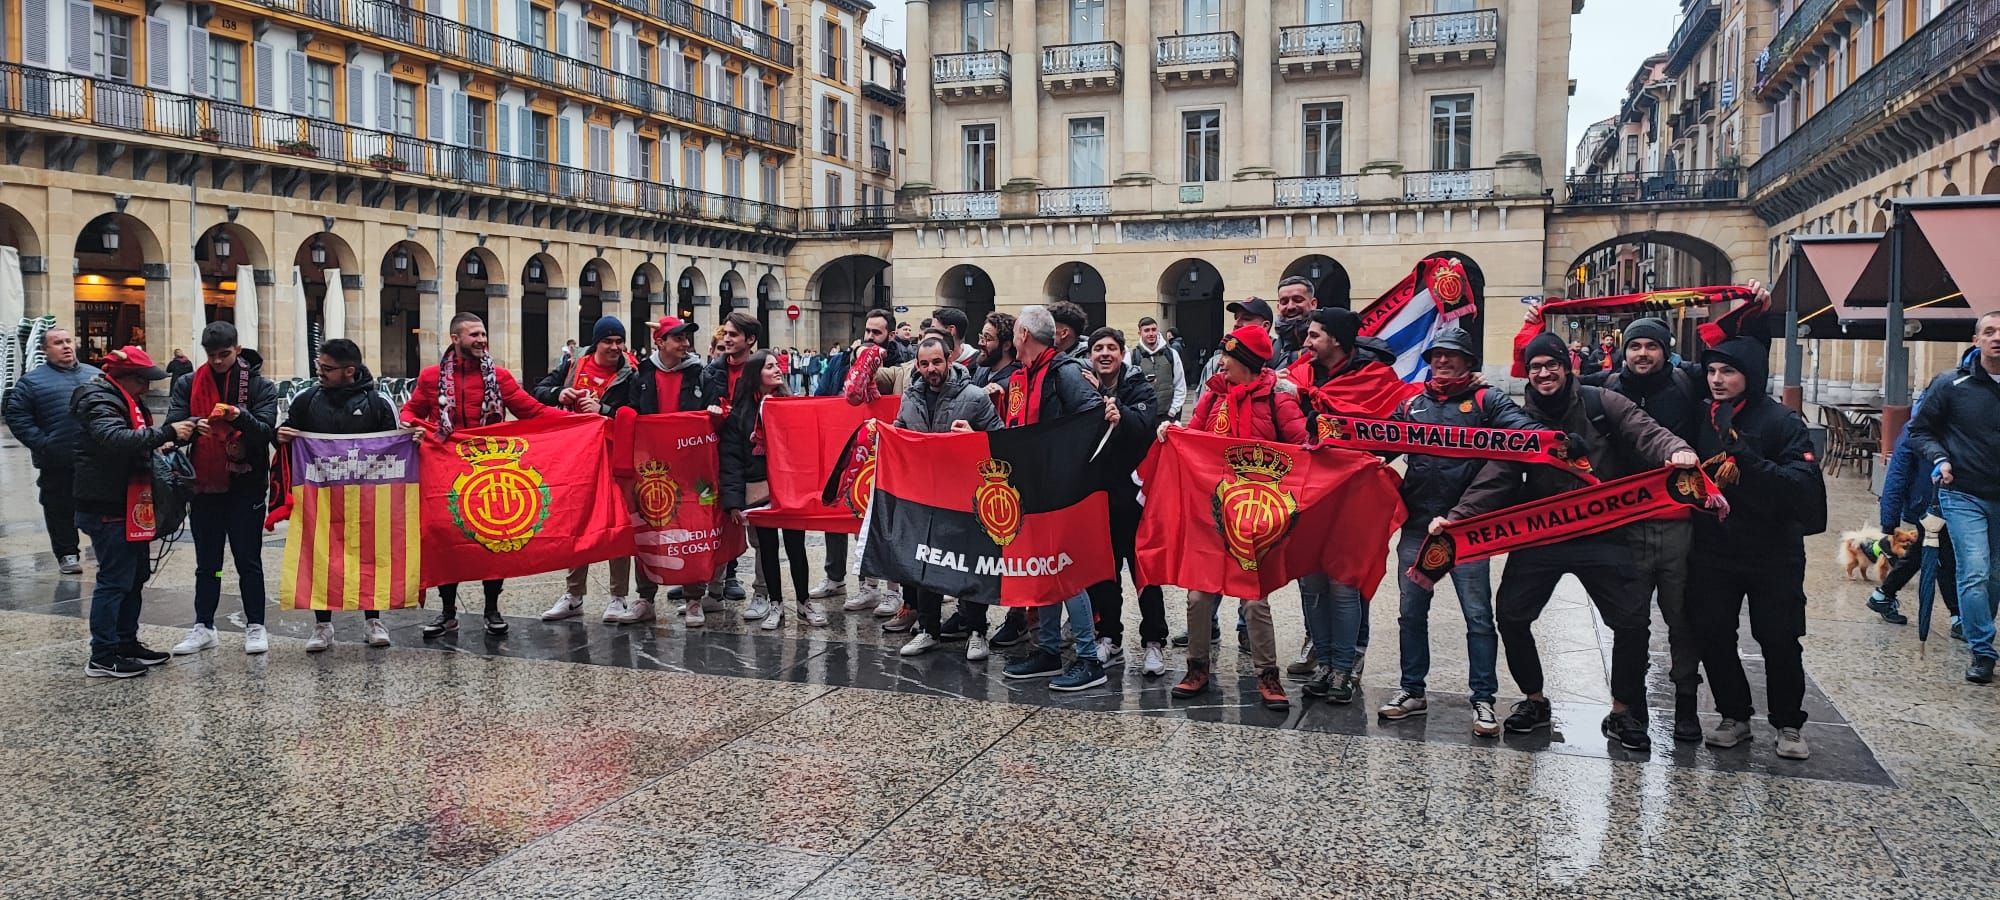 Los aficionados del Real Mallorca comienzan a invadir San Sebastián